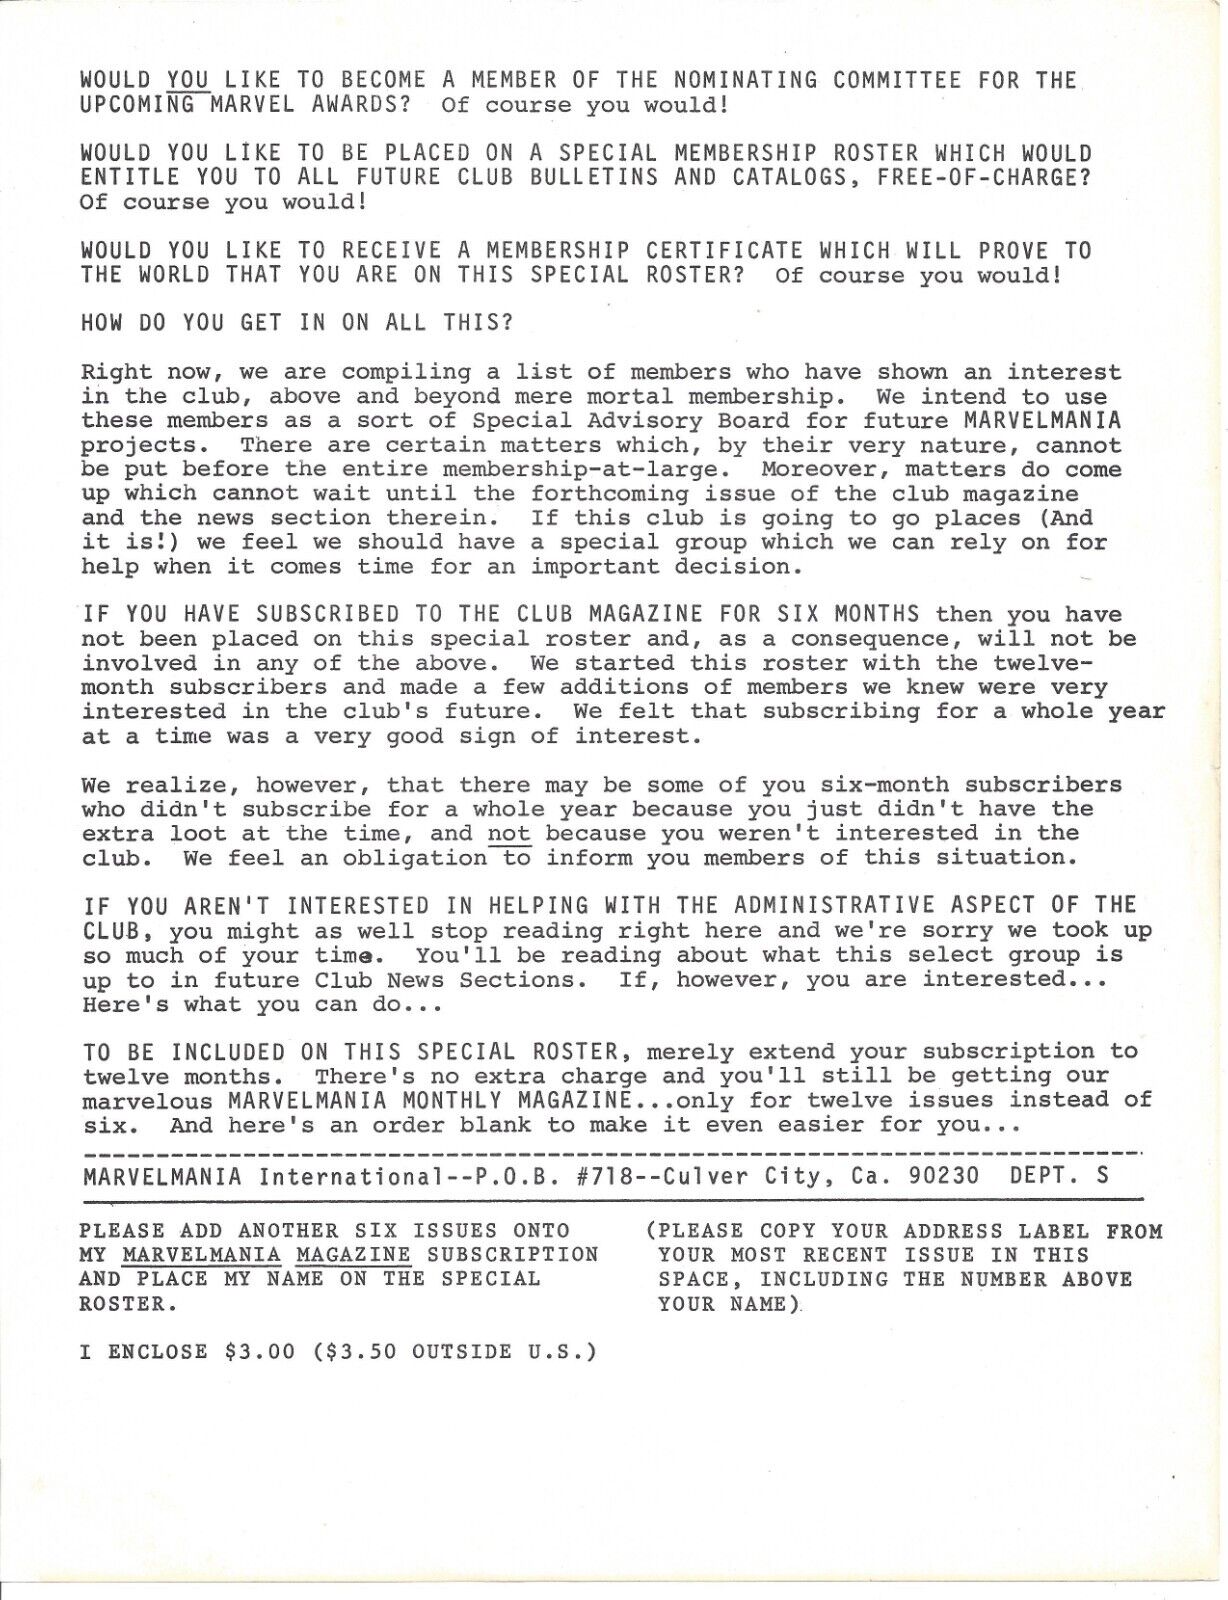 RARE 1969 Marvel Comics Marvelmania International Invitation Committee Letter